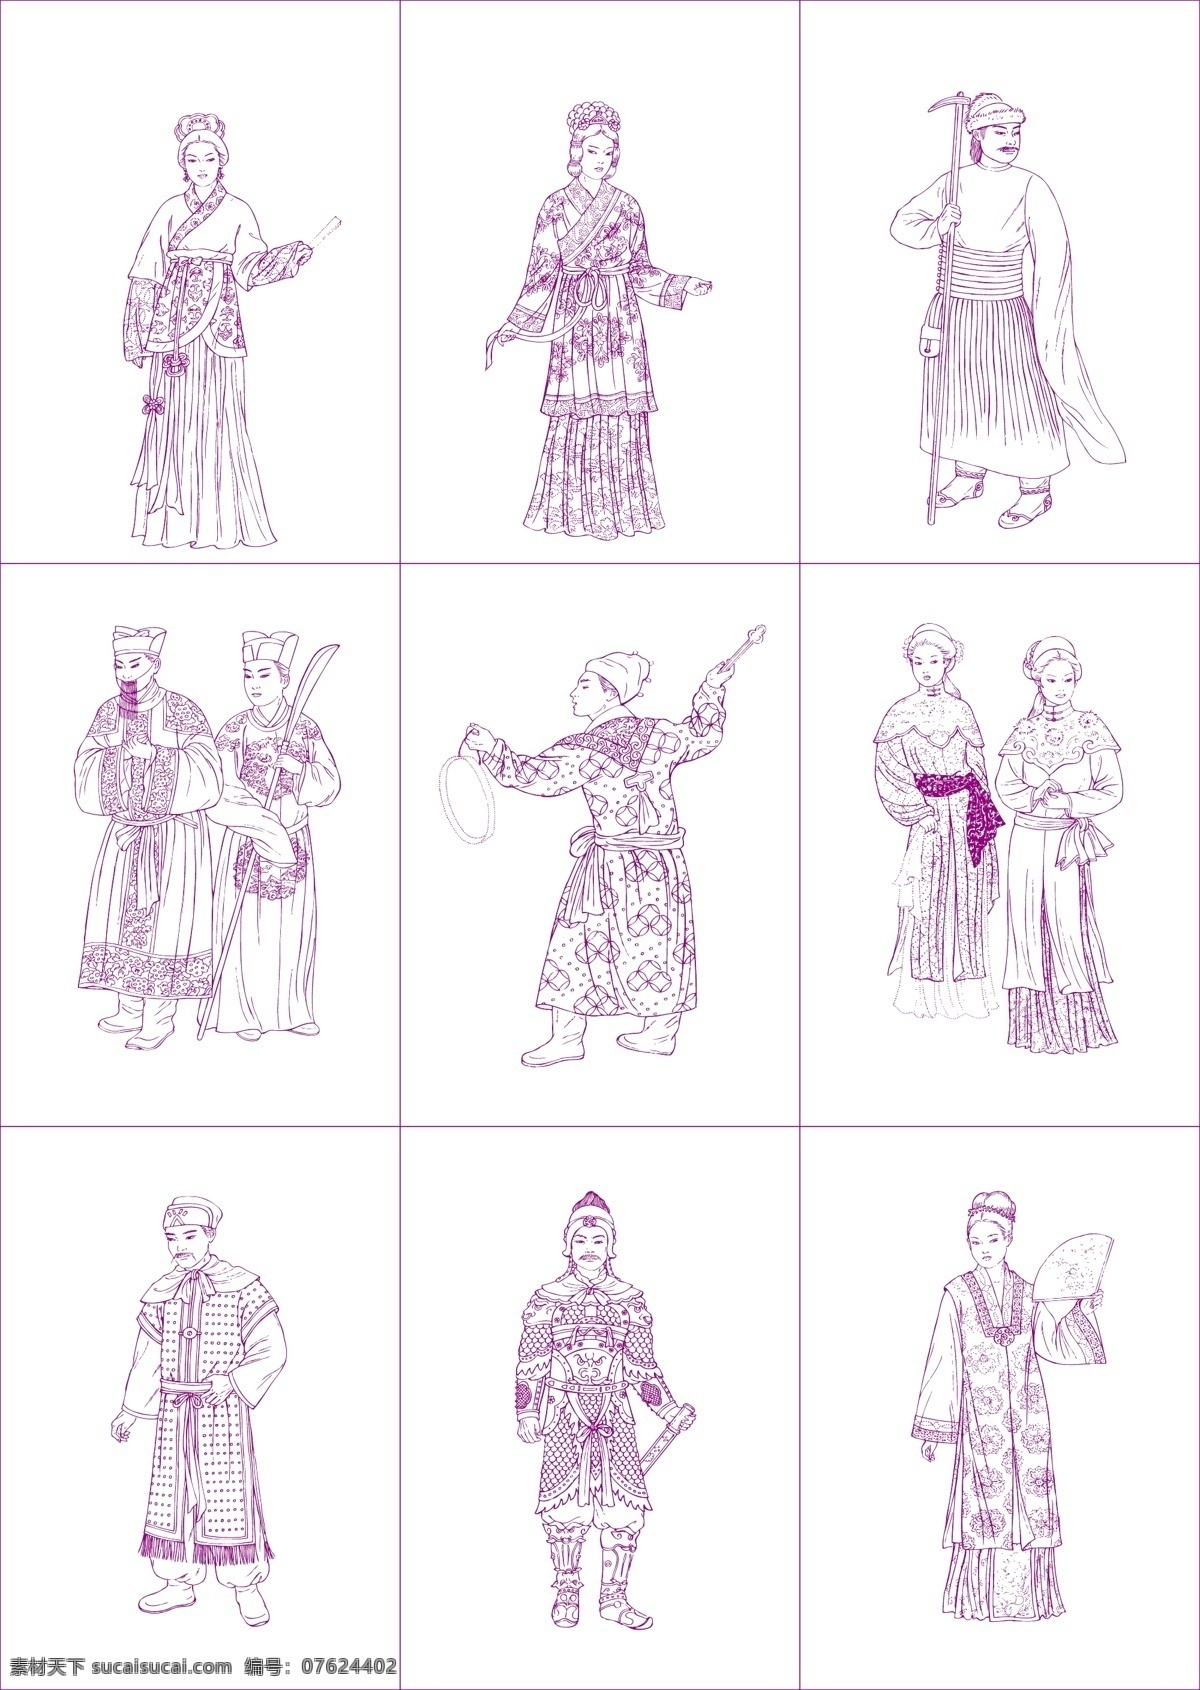 中国 古代 线描 人物 矢量图 妇女 宫 农夫 女性 古代士兵 歌女 矢量 矢量人物